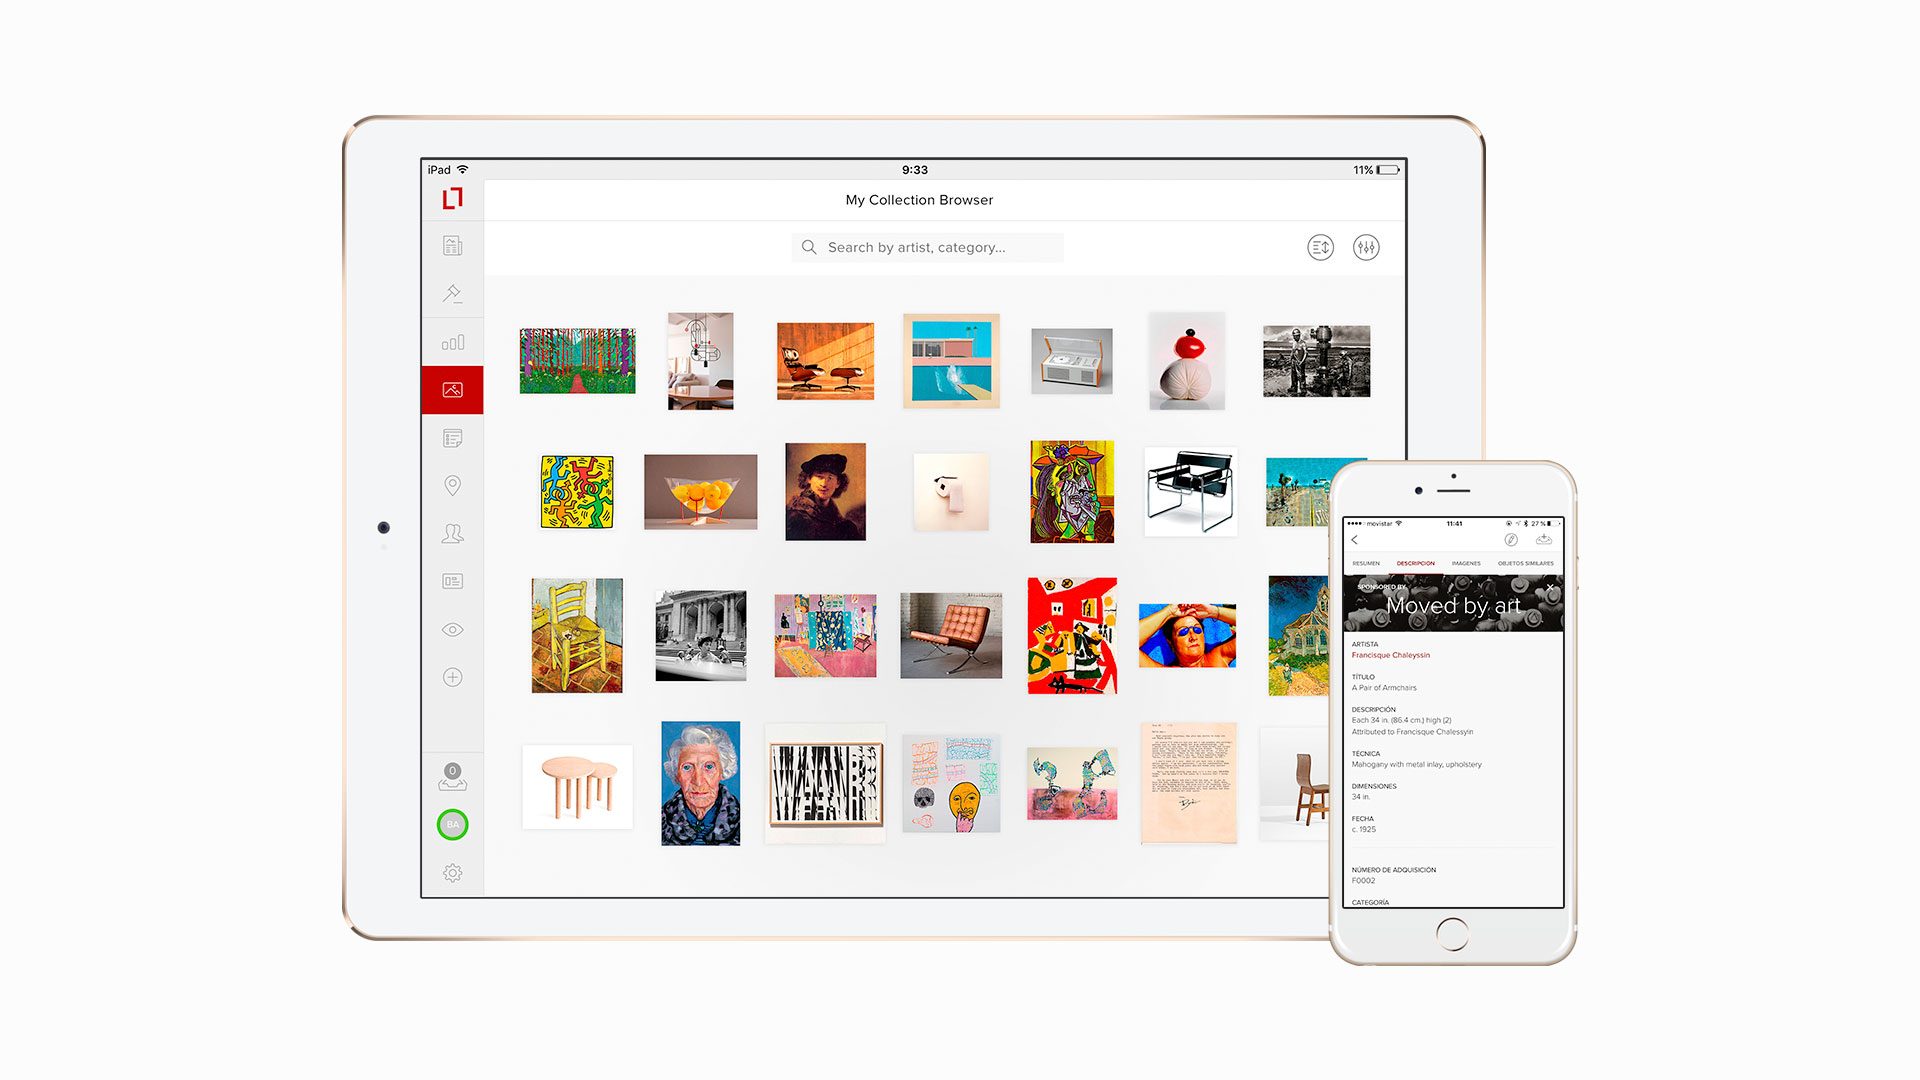 iPad & iPhone versions of Collectrium's app